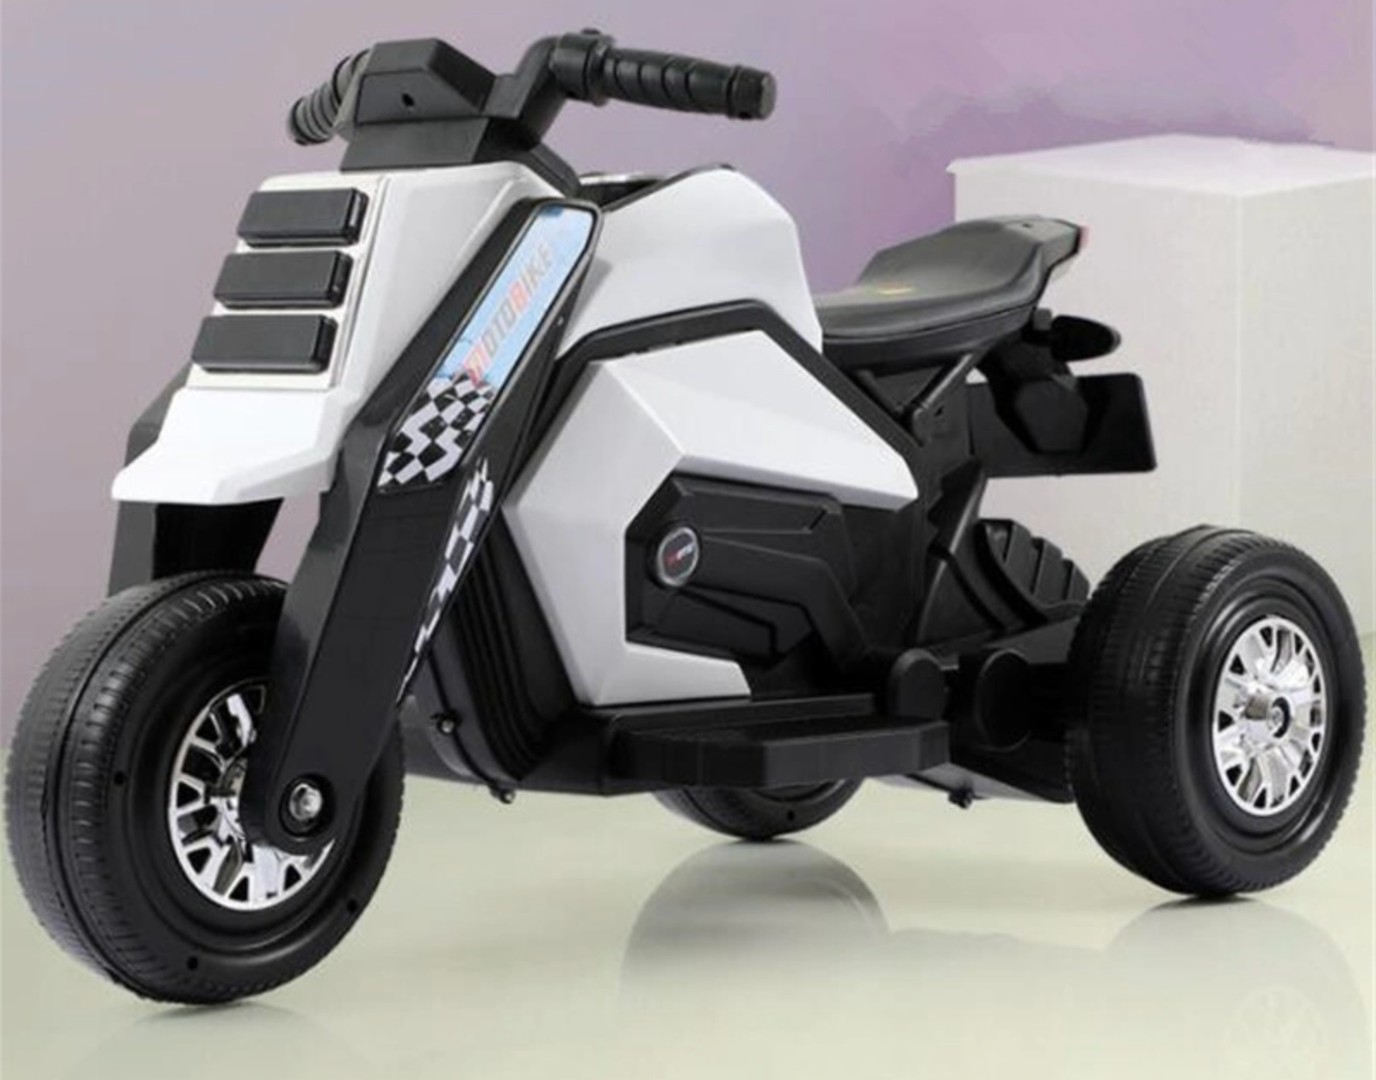 juguetes - Motorcito eléctrico para niños de tres ruedas recargable, motor moto